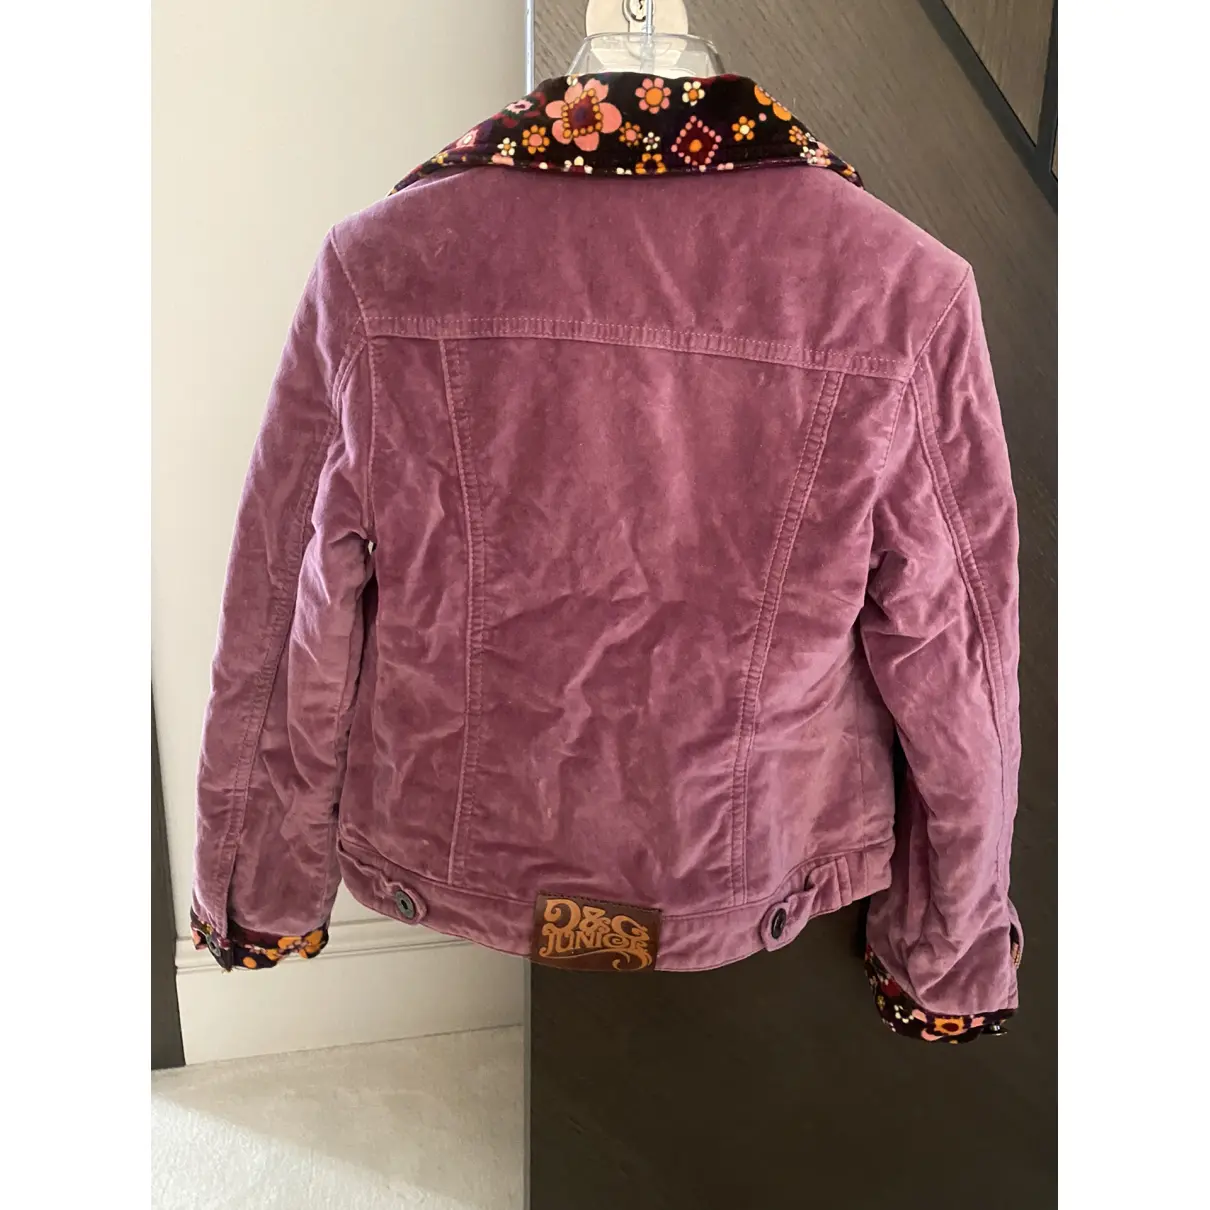 Buy D&G Velvet jacket online